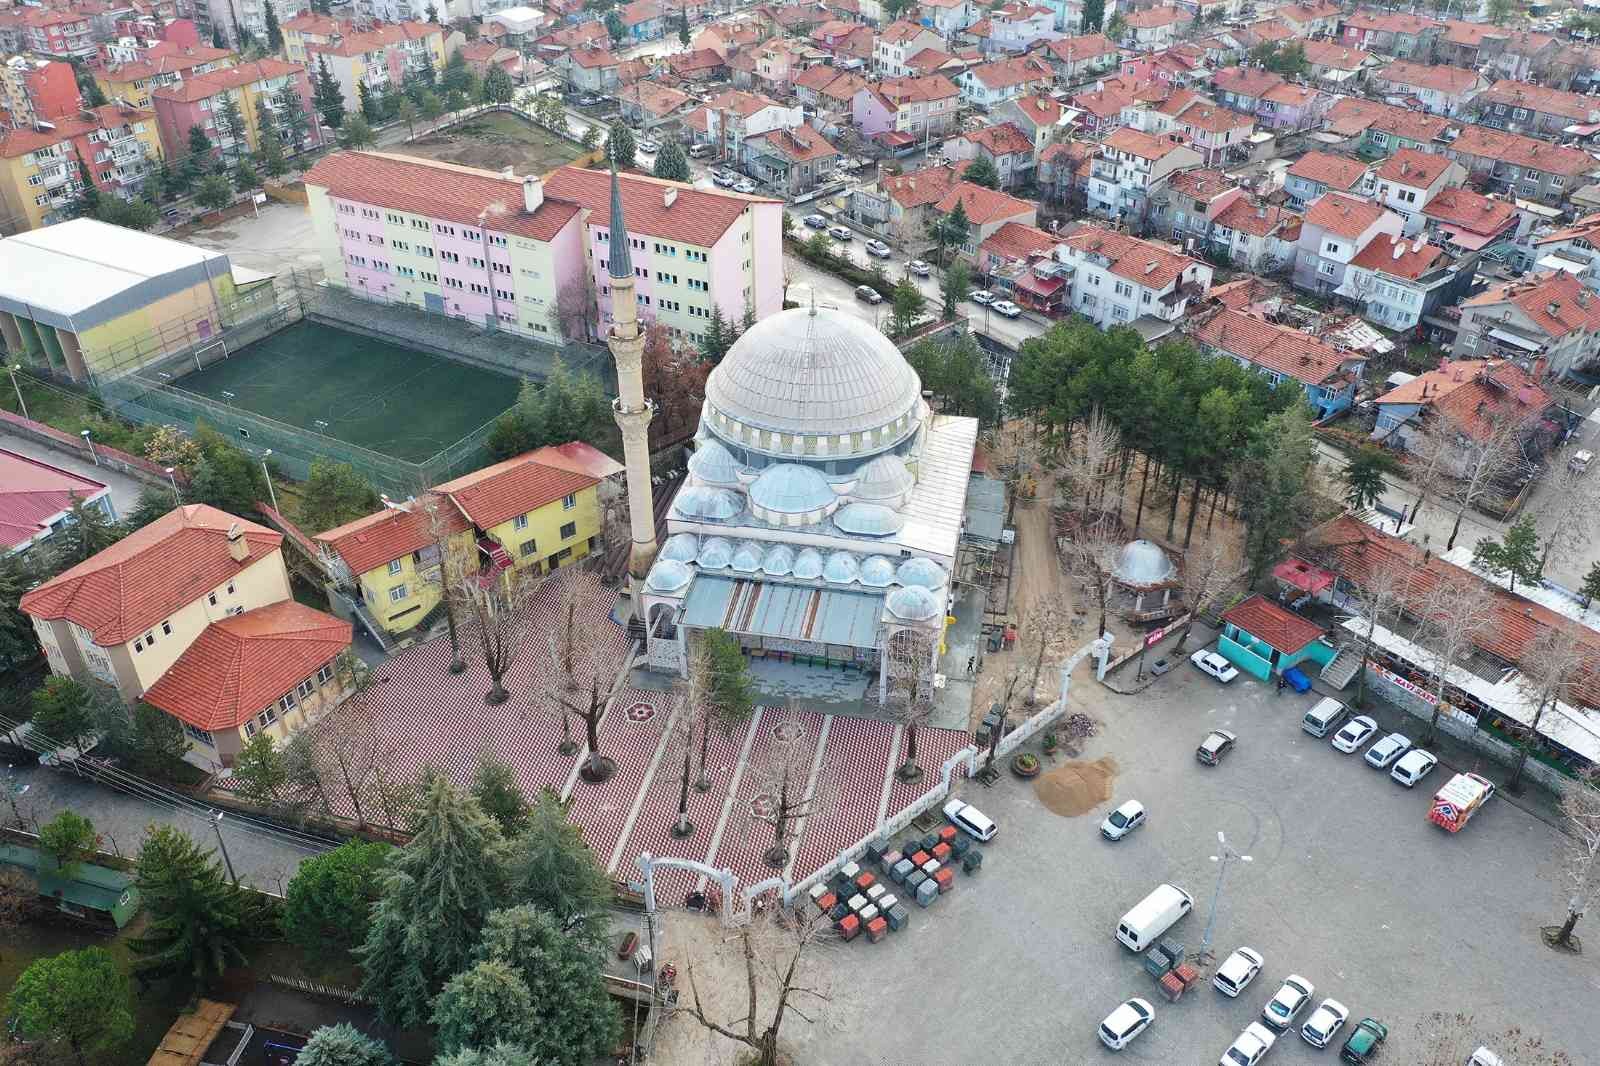 Isparta Gülistan Camii avlusu 3 boyutlu taşlarla rengarenk görünüme kavuştu